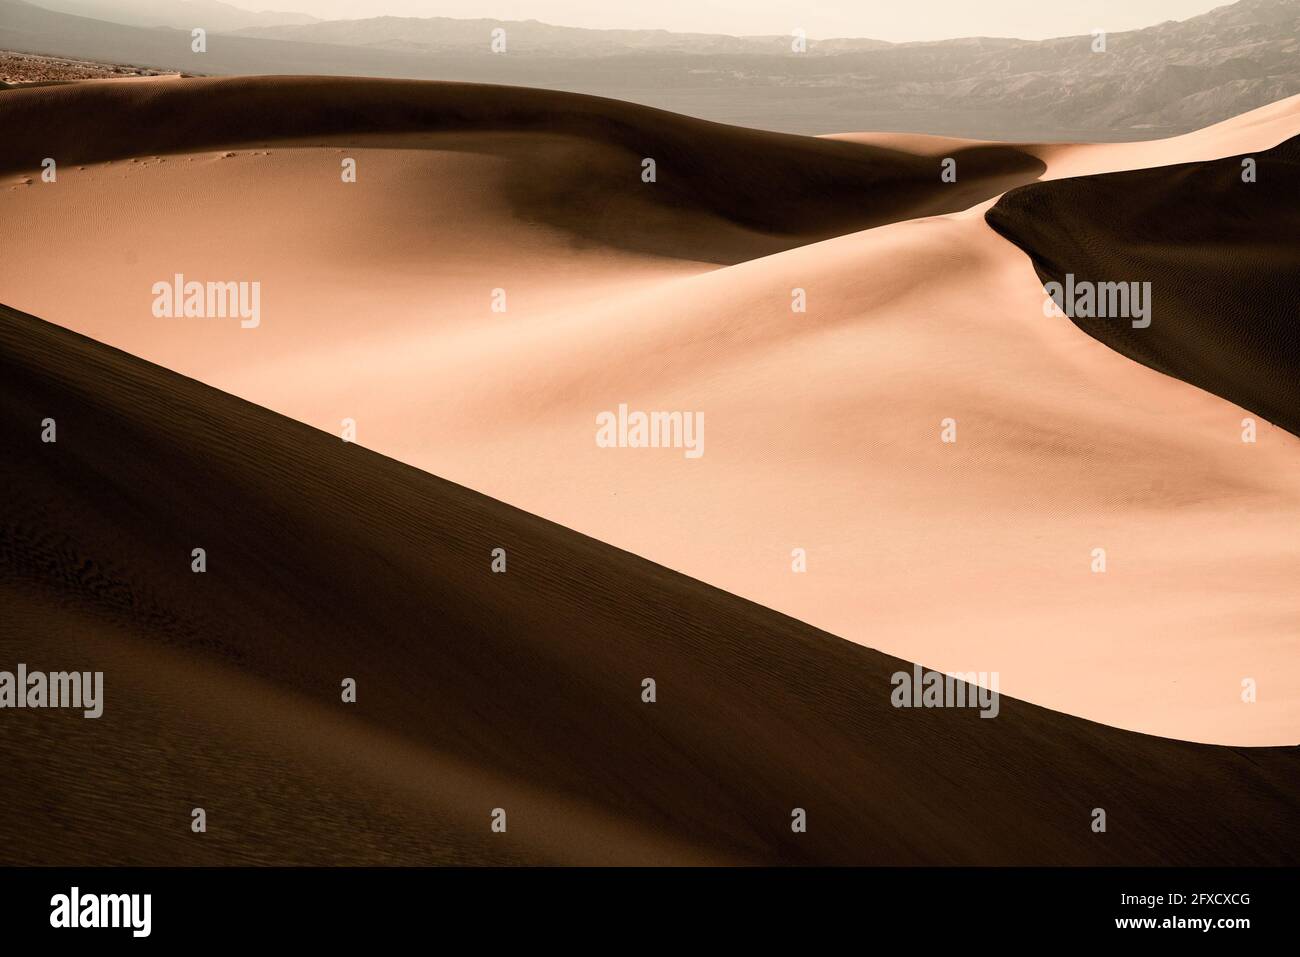 Motifs et vagues de dunes de sable avec des ondulations vues depuis le parc national de la Vallée de la mort, Californie Banque D'Images